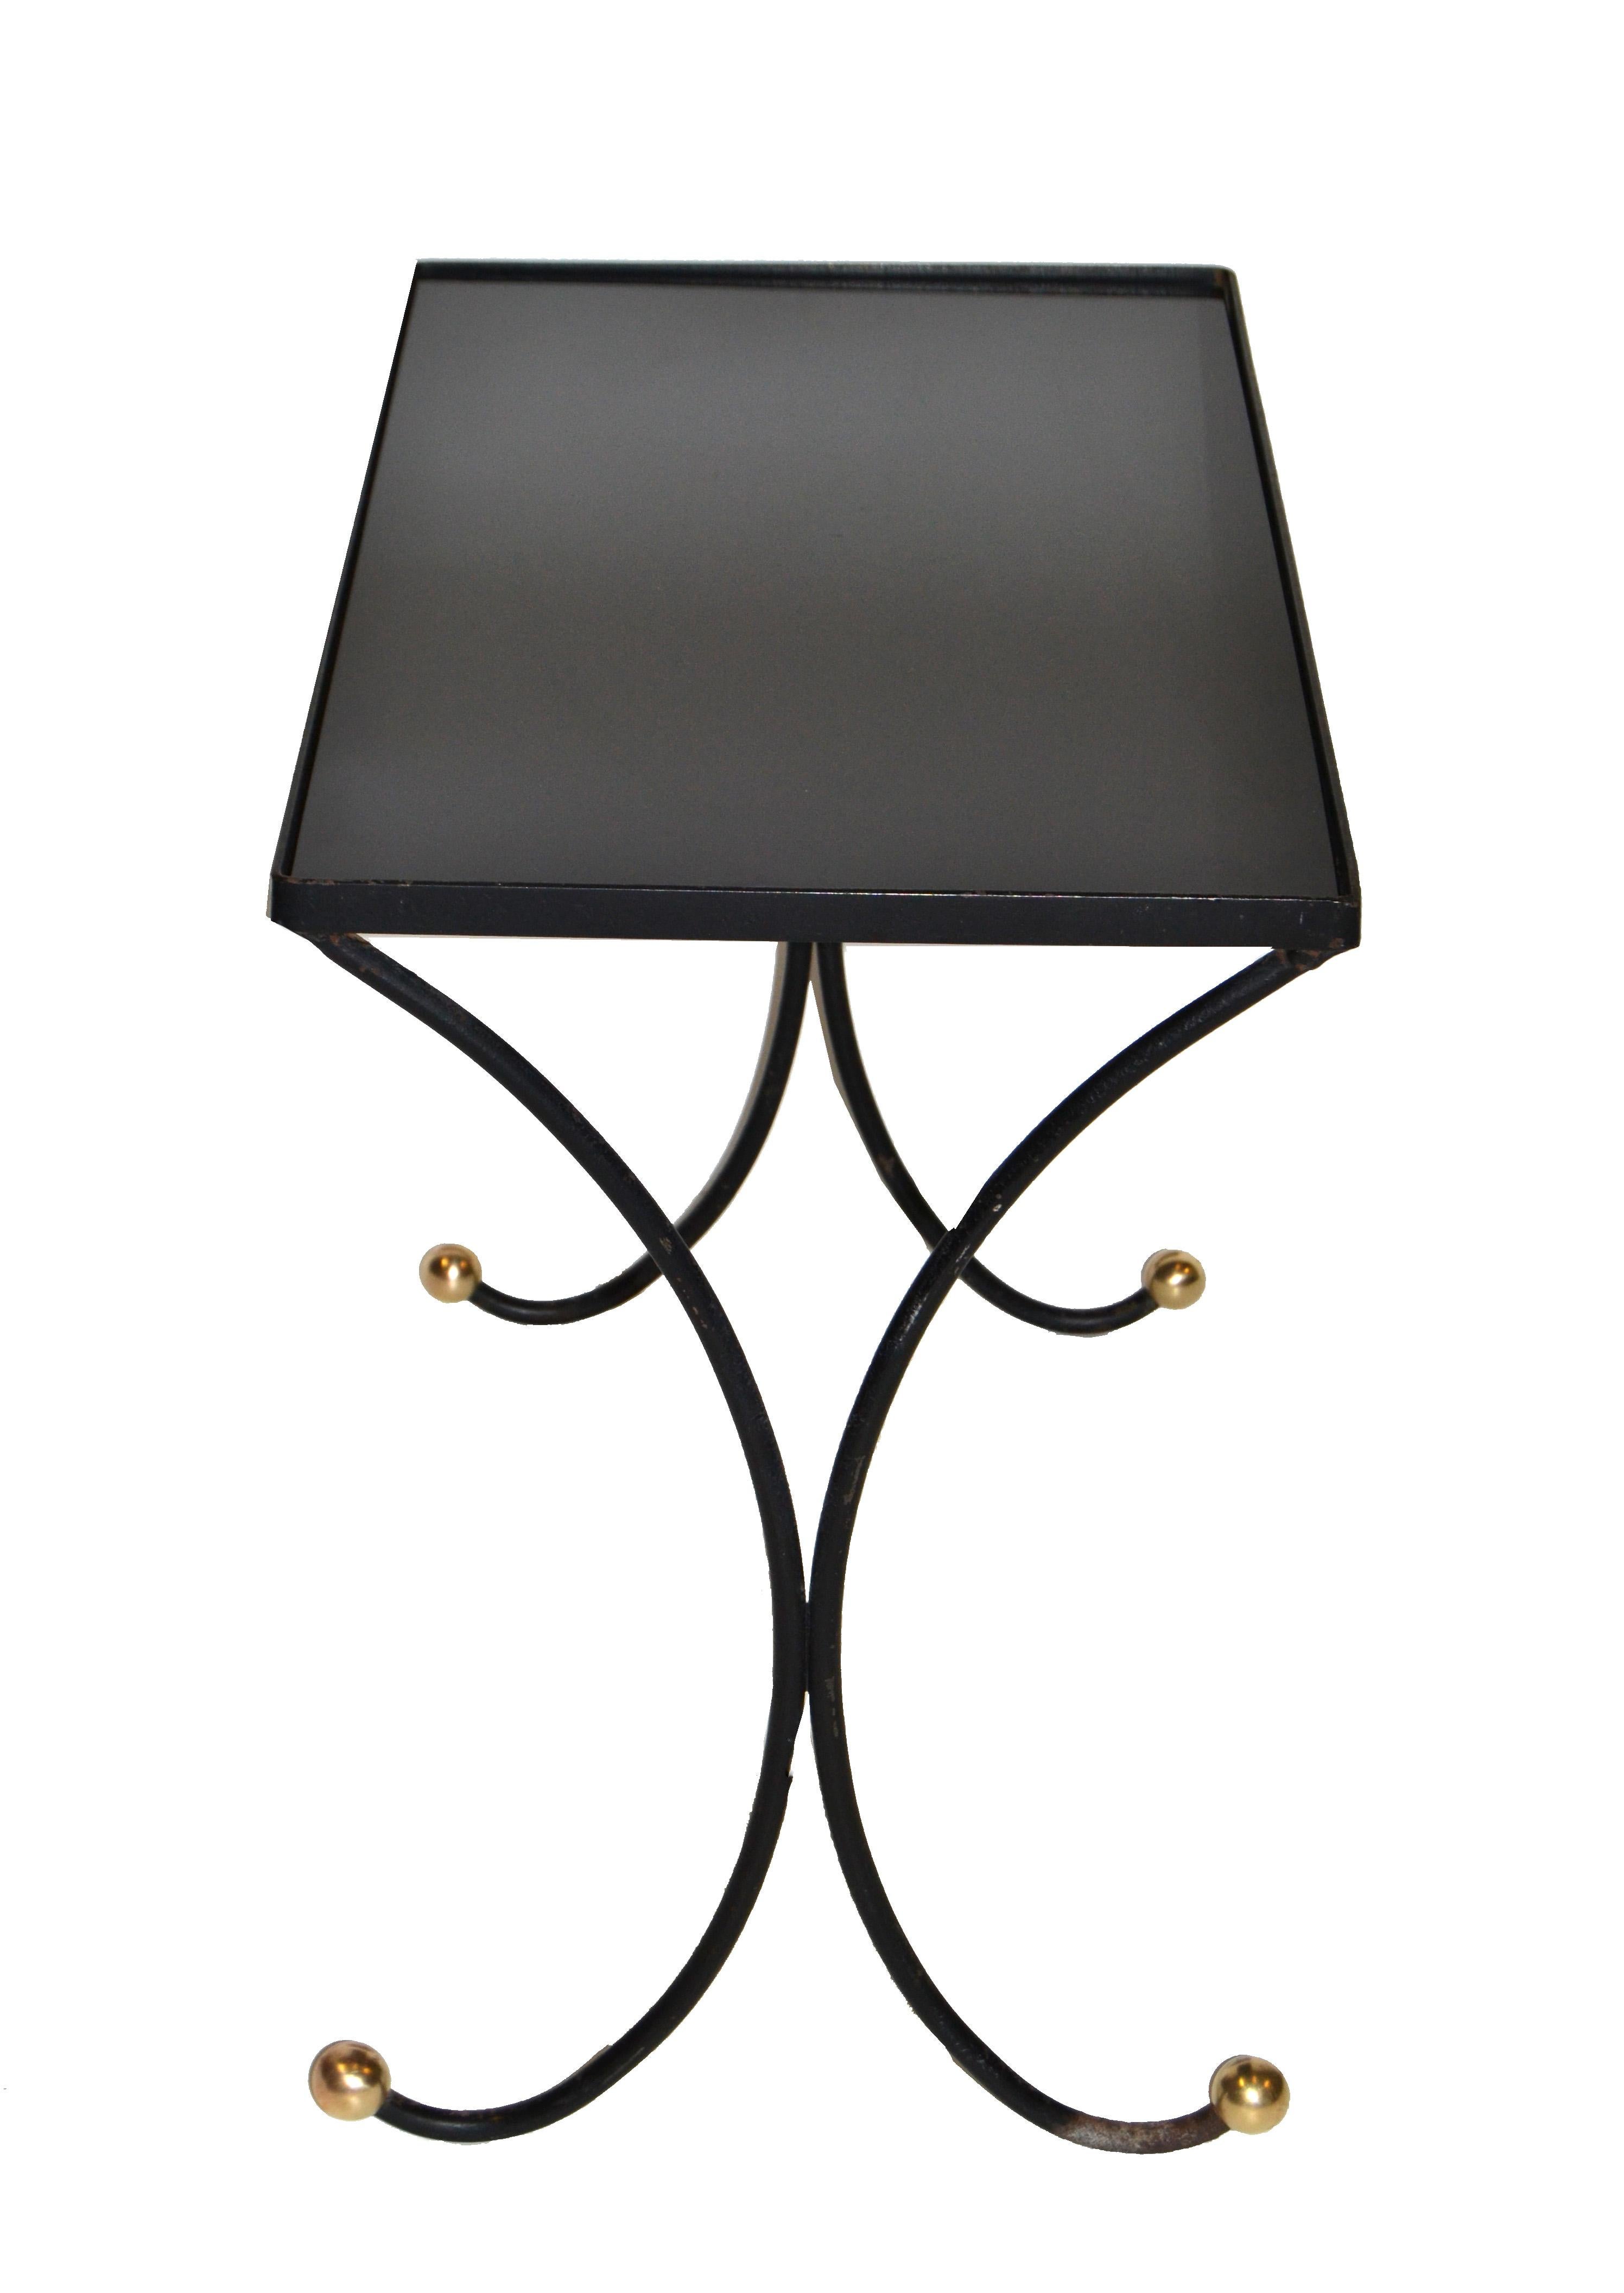 Nous vous proposons cette table d'appoint originale des années 1950 en métal forgé ébénisé avec des pieds ronds en laiton.
comporte un plateau en verre noir.
Est laissé en état d'origine avec une usure aux pieds.